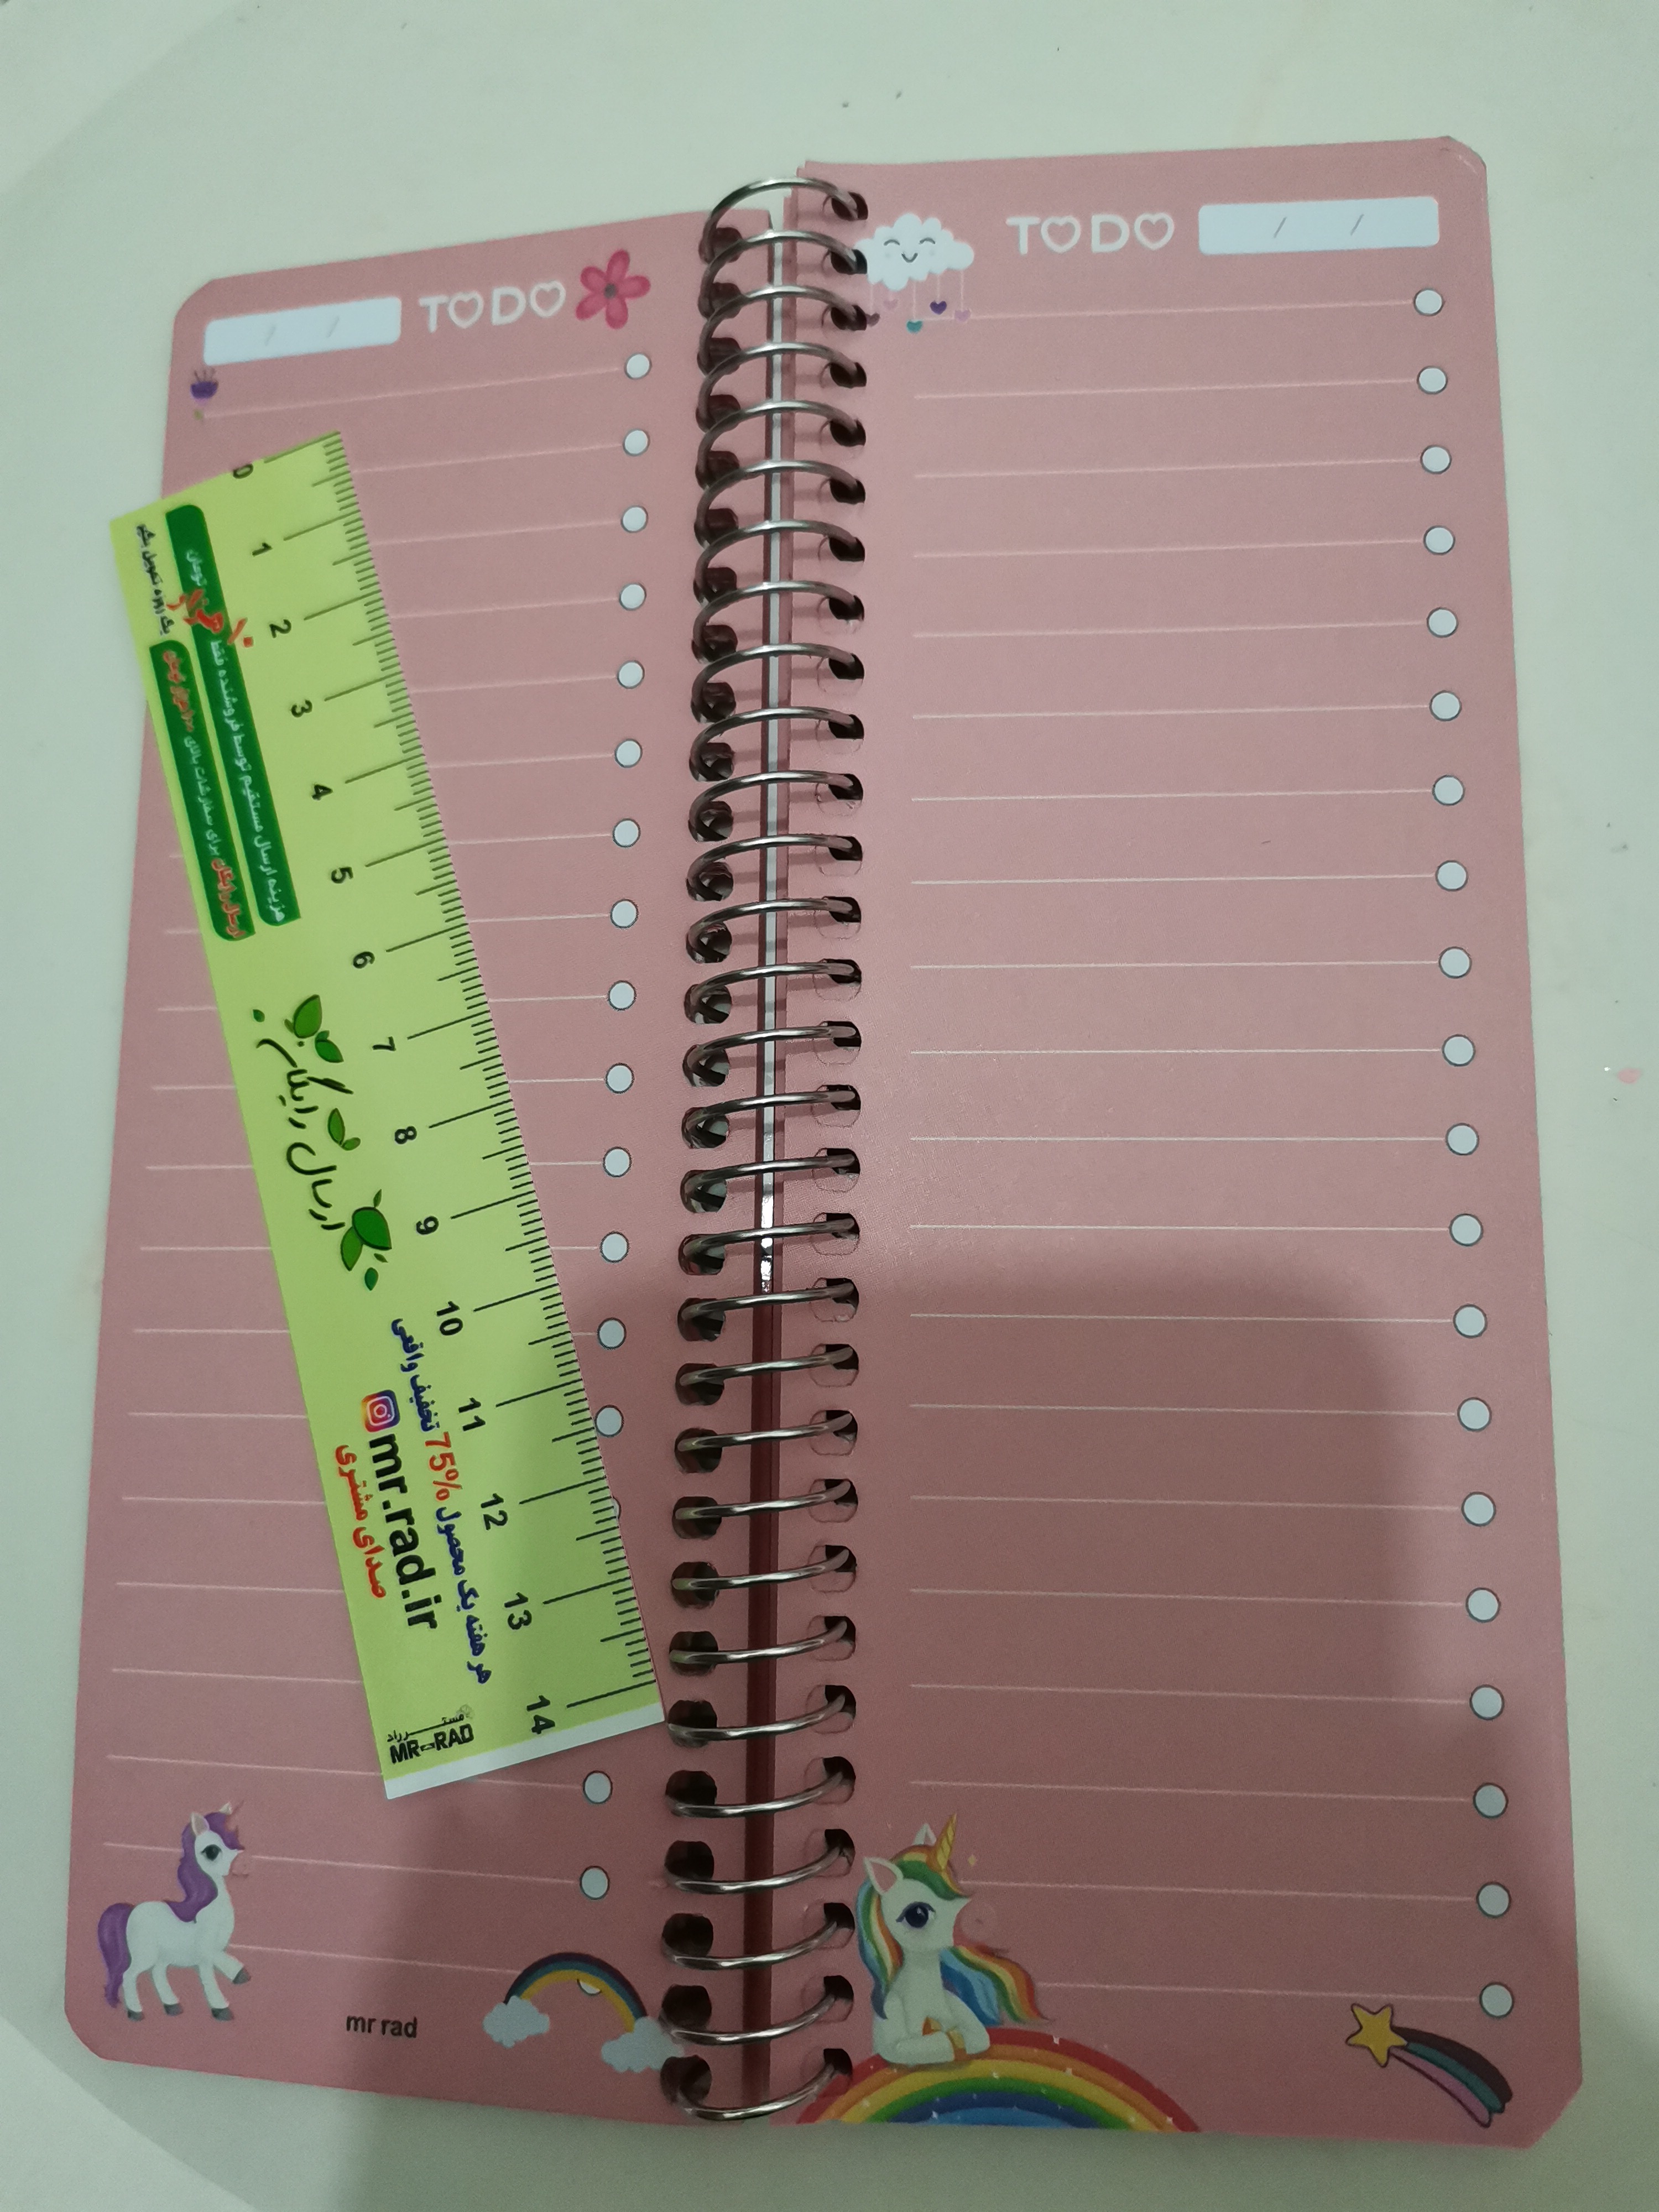 دفترچه یادداشت مستر راد مدل to do list طرح یونیکورن کد 1576 unicor